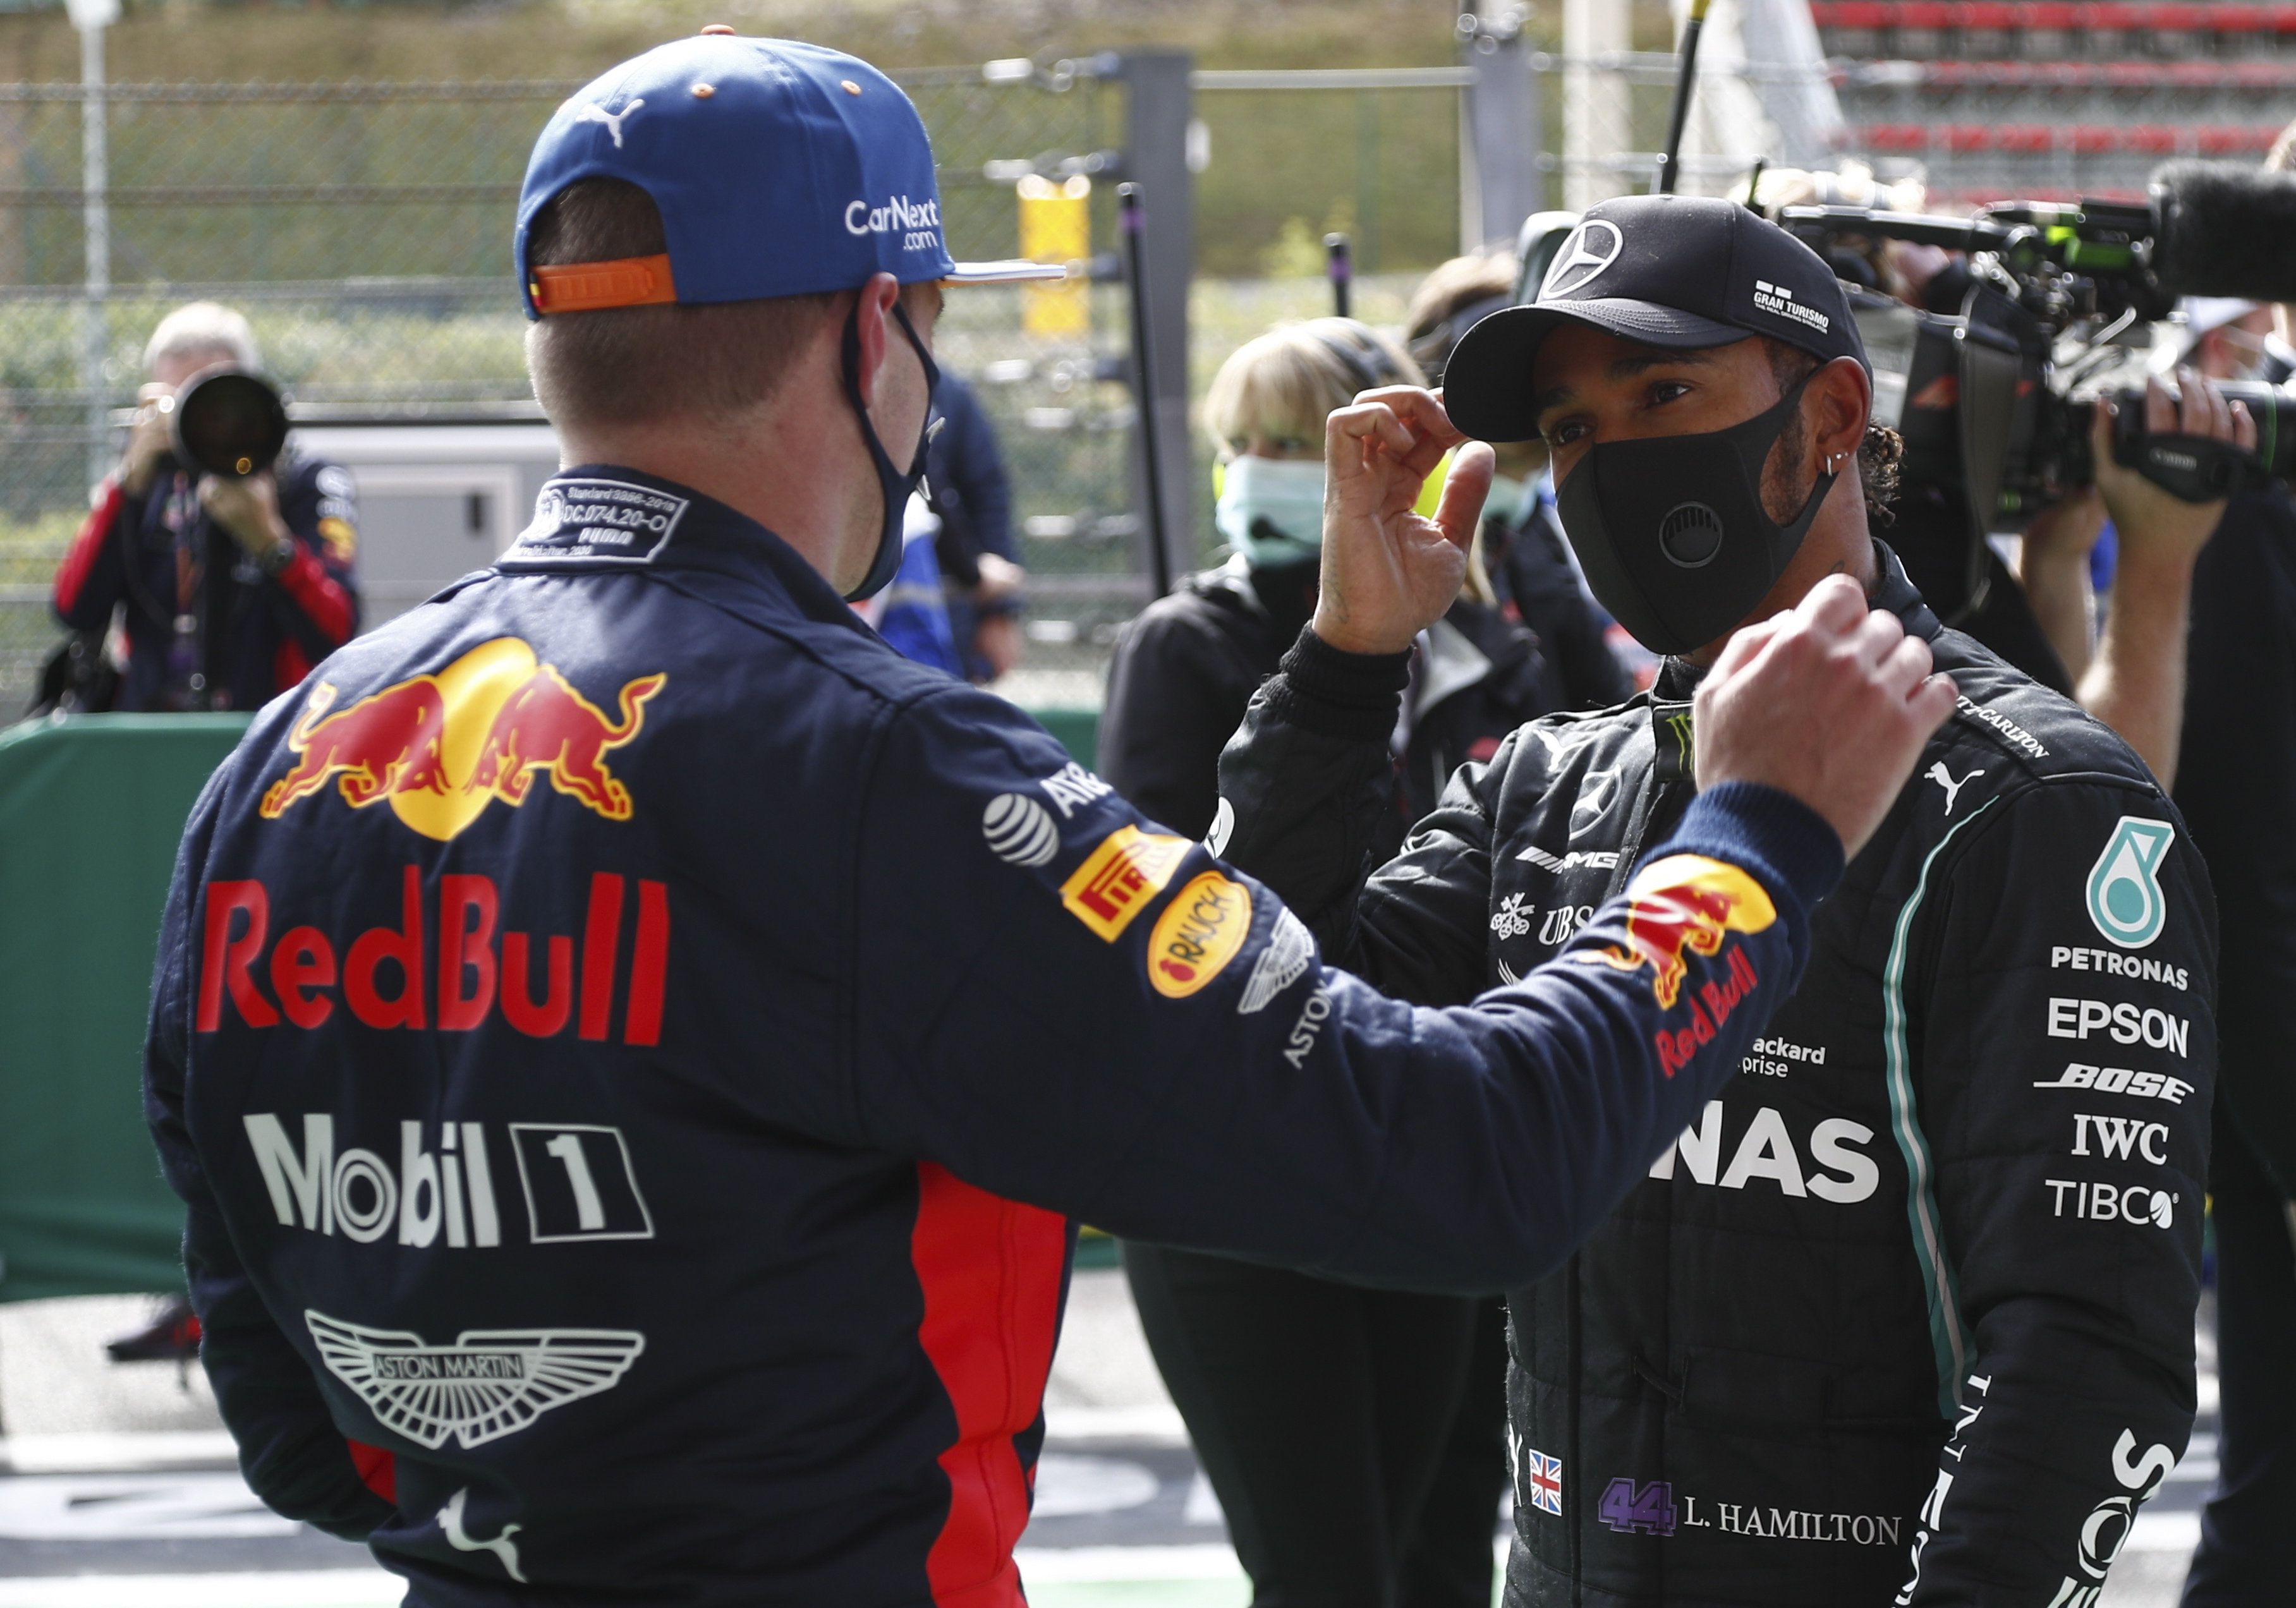 Max Verstappen a hírek szerint akár Lewis Hamilton csapattársaként is szívesebben kipróbálná magát, mint egy szenvedő Red Bull volánja mögött, esélytelenül a világbajnoki címre./ Fotó: MTI/EPA/Reuters/Francois Lenoir